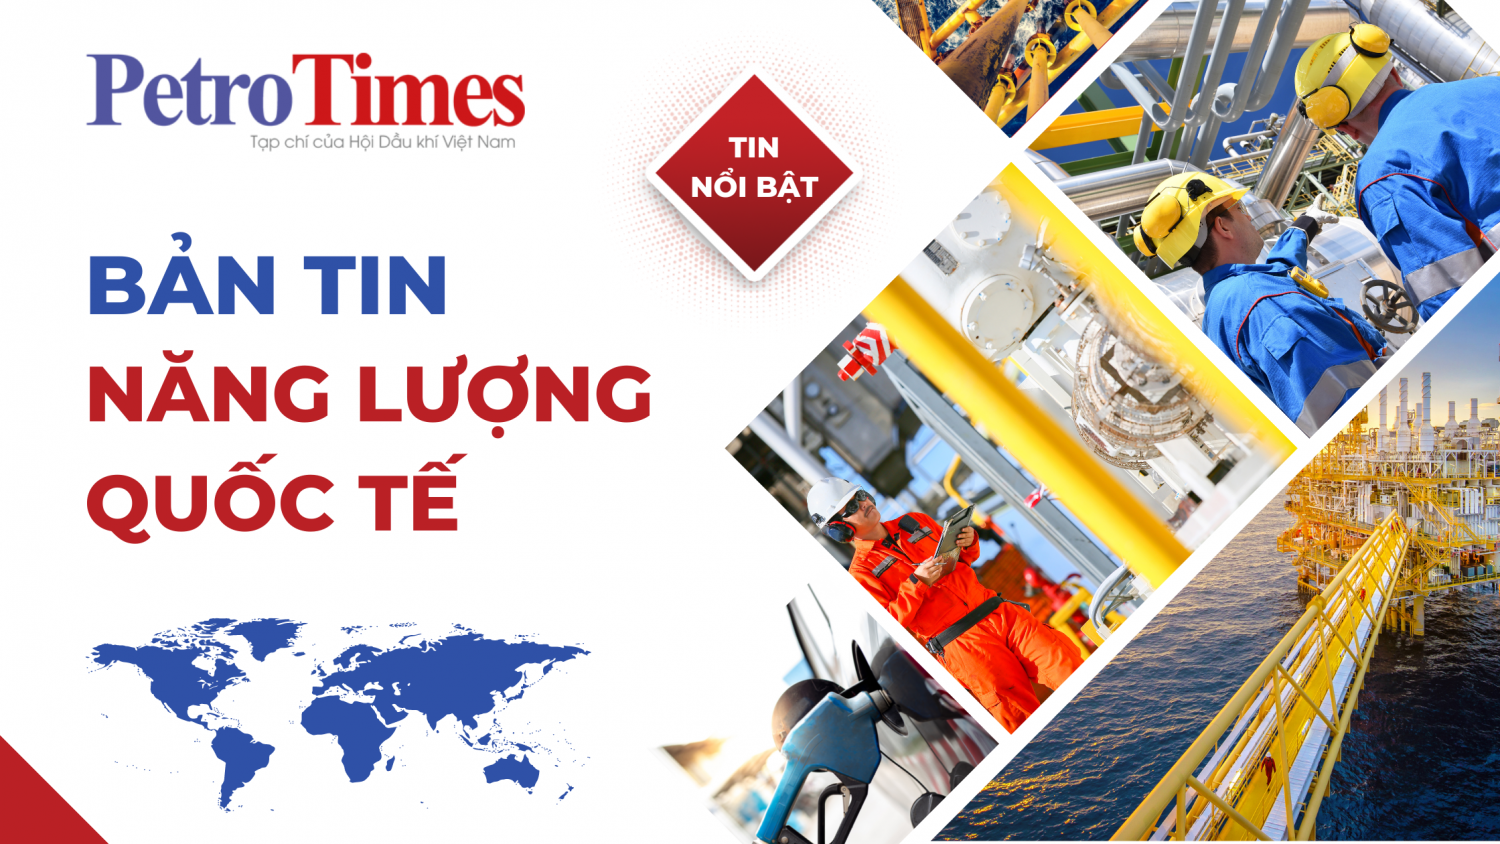 Bản tin Năng lượng Quốc tế 12/1: Freeport LNG bác báo cáo của Reuters về thời điểm tái khởi động